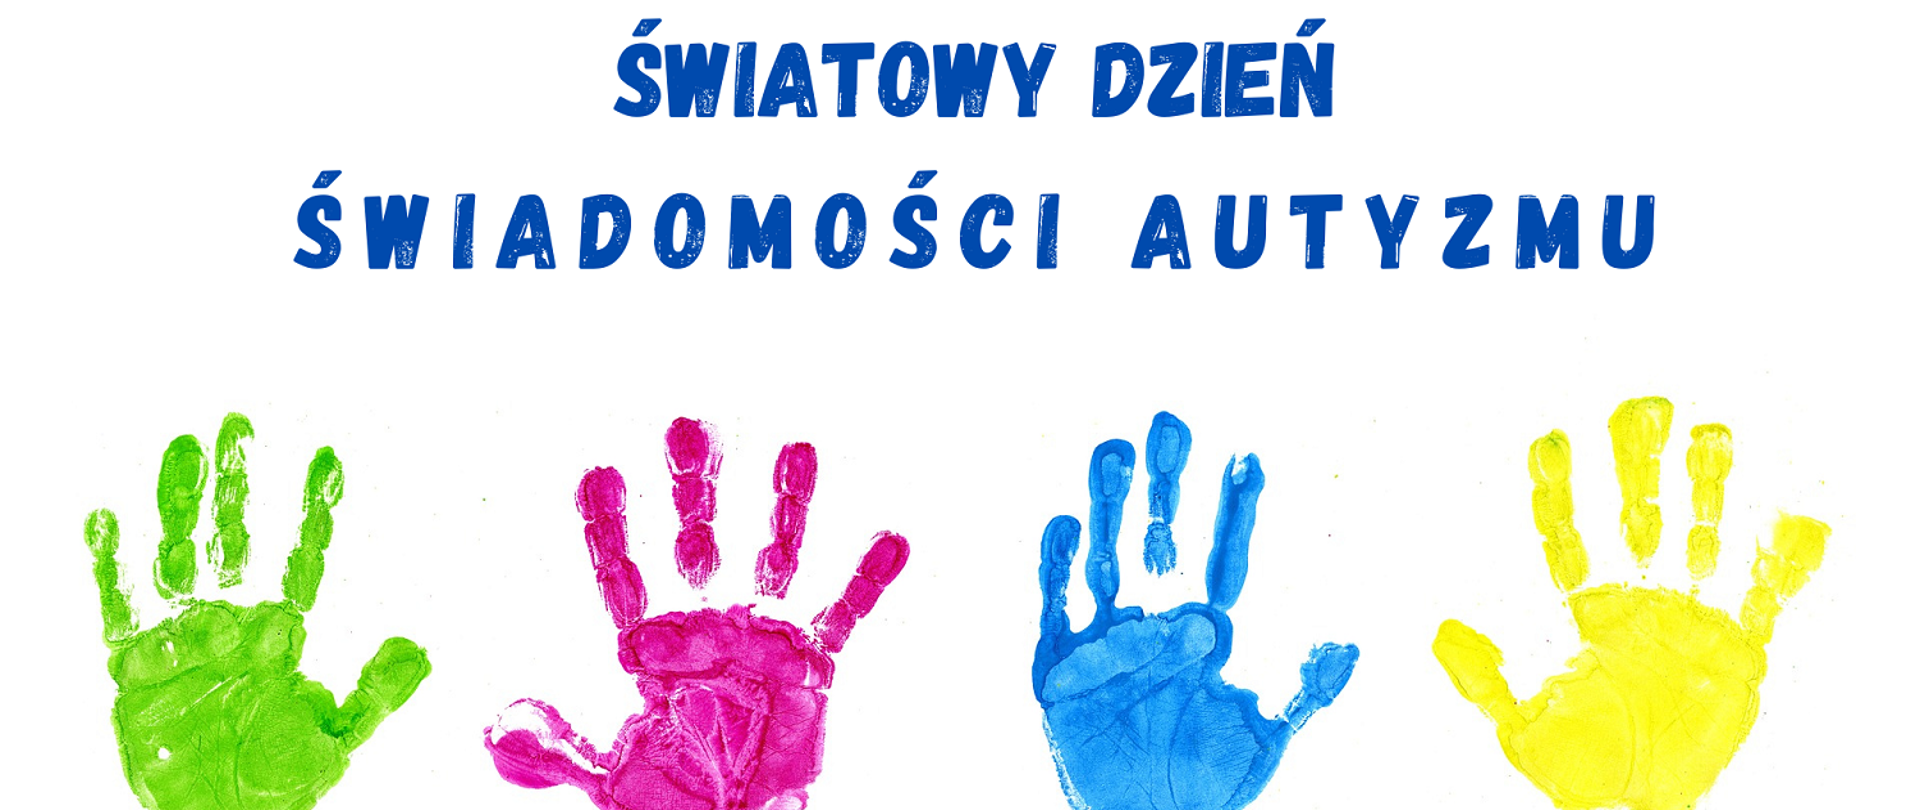 białe tło i niebieskie litery 2 kwietnia światowy dzień świadomości autyzmu na dole odbite kolorowe dłonie 